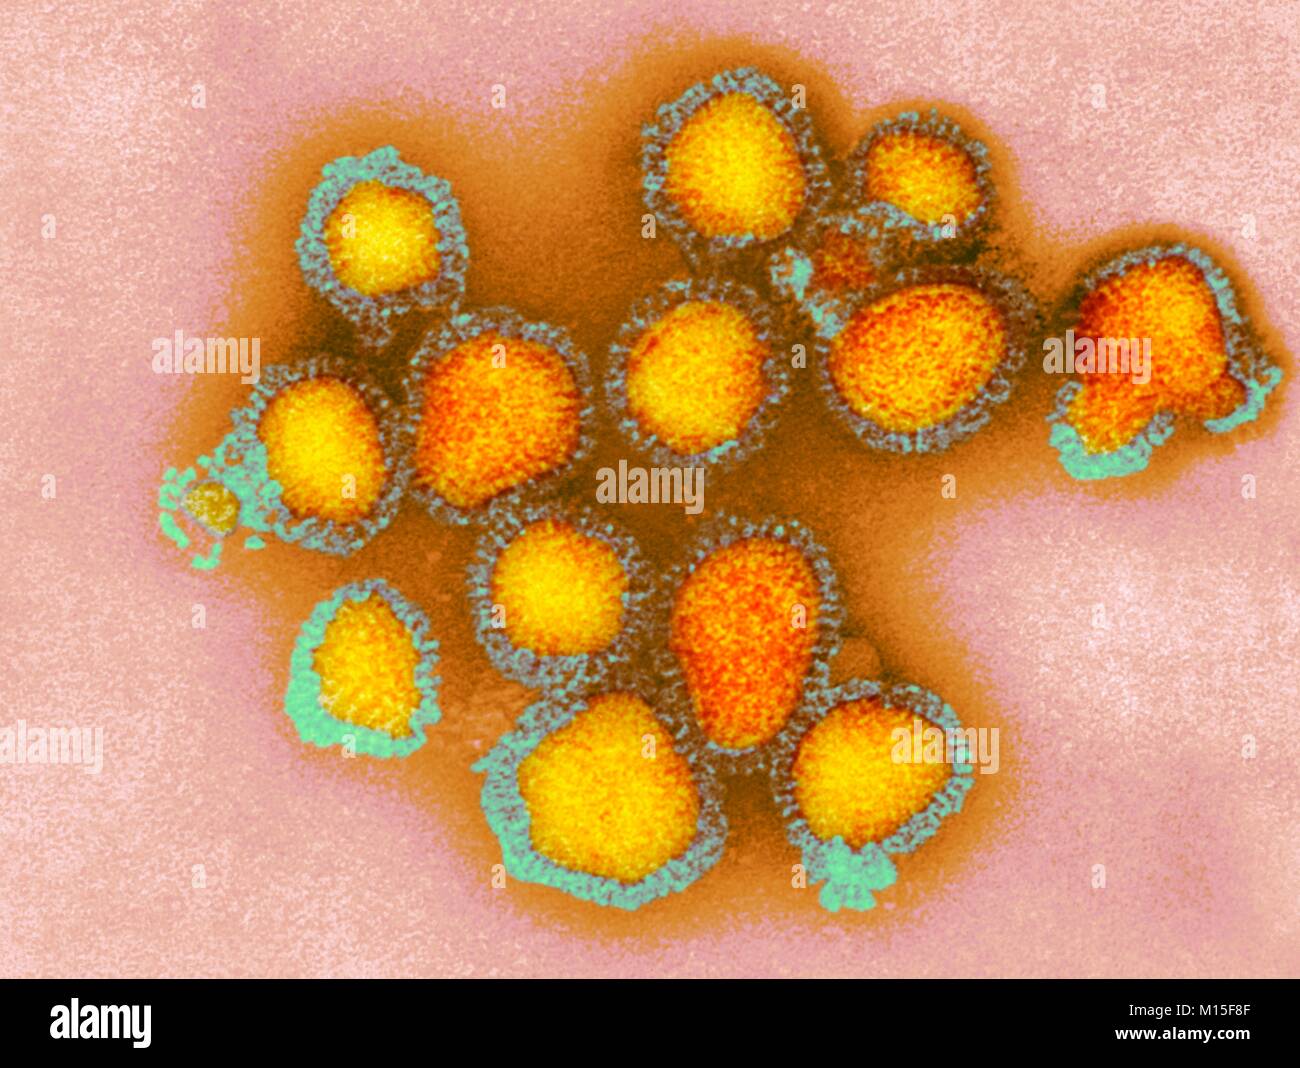 H3N2 del virus de la influenza, las partículas coloreadas micrógrafo electrónico de transmisión (TEM). Cada virus consiste de una capa de proteína (nucleocapsid) que rodea un núcleo de ARN (ácido ribonucleico) material genético. El nucleocapsid circundante es un sobre que contiene lípidos picos de la glicoproteína hemaglutinina (H) y la neuraminidasa (N). Estos virus fueron parte de la pandemia de gripe de Hong Kong de 1968-1969, que causó la muerte de aproximadamente un millón en todo el mundo. H3N2 virus son capaces de infectar a las aves y los mamíferos, así como los seres humanos. Foto de stock